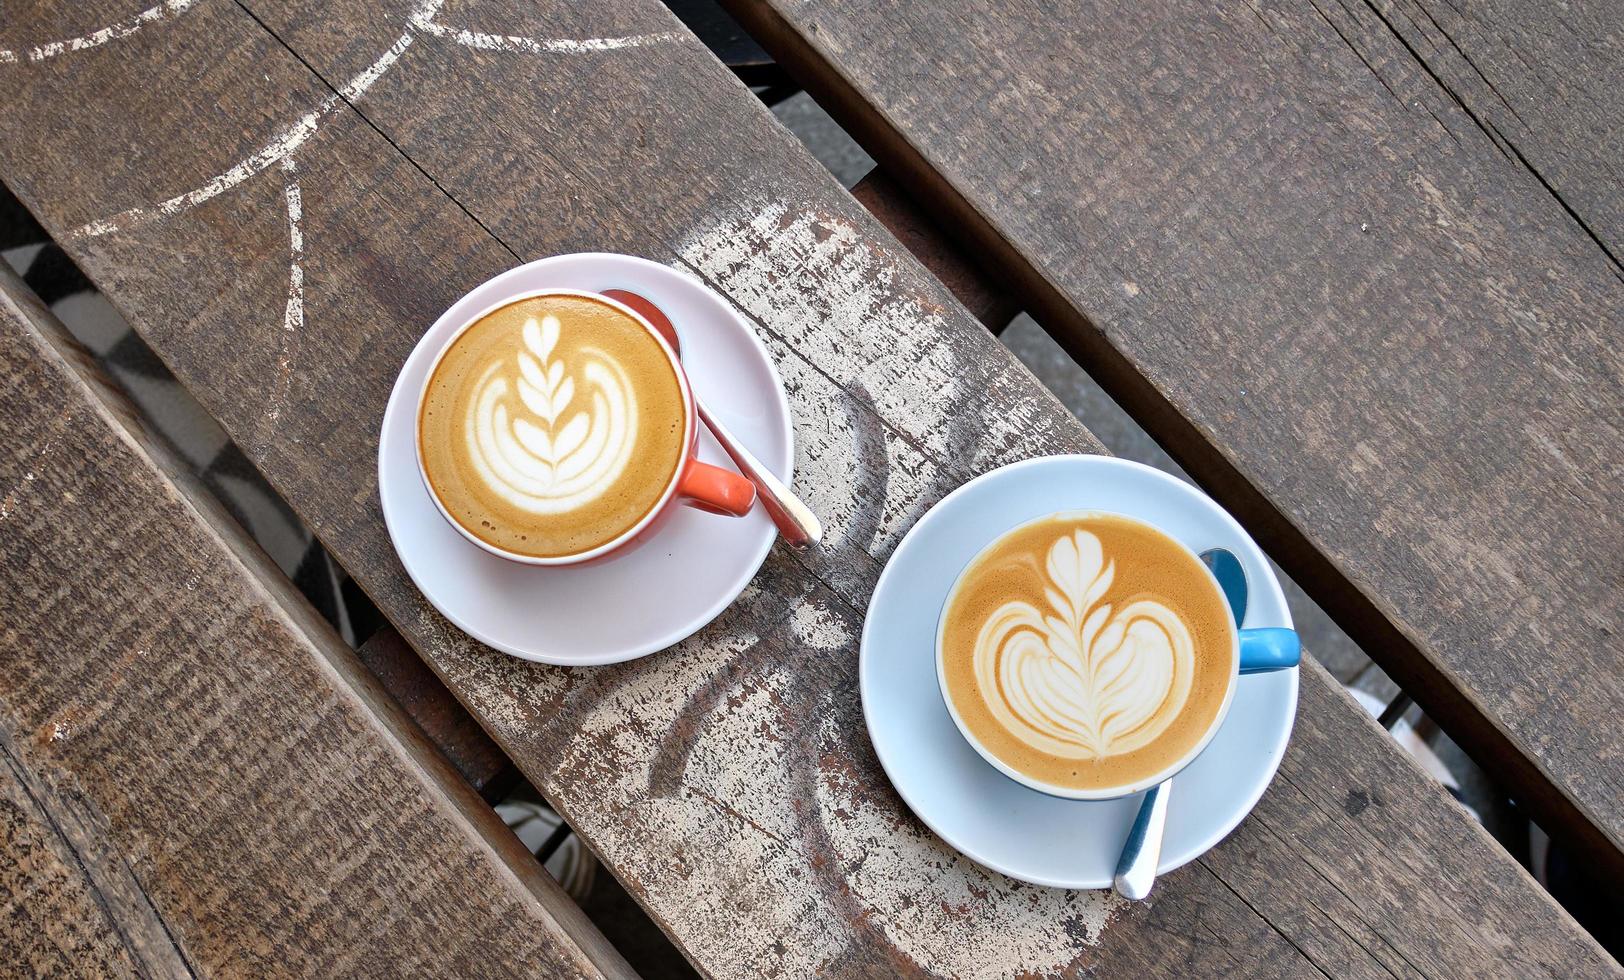 Capture en grand angle de deux tasses de café au lait sur une surface en bois photo